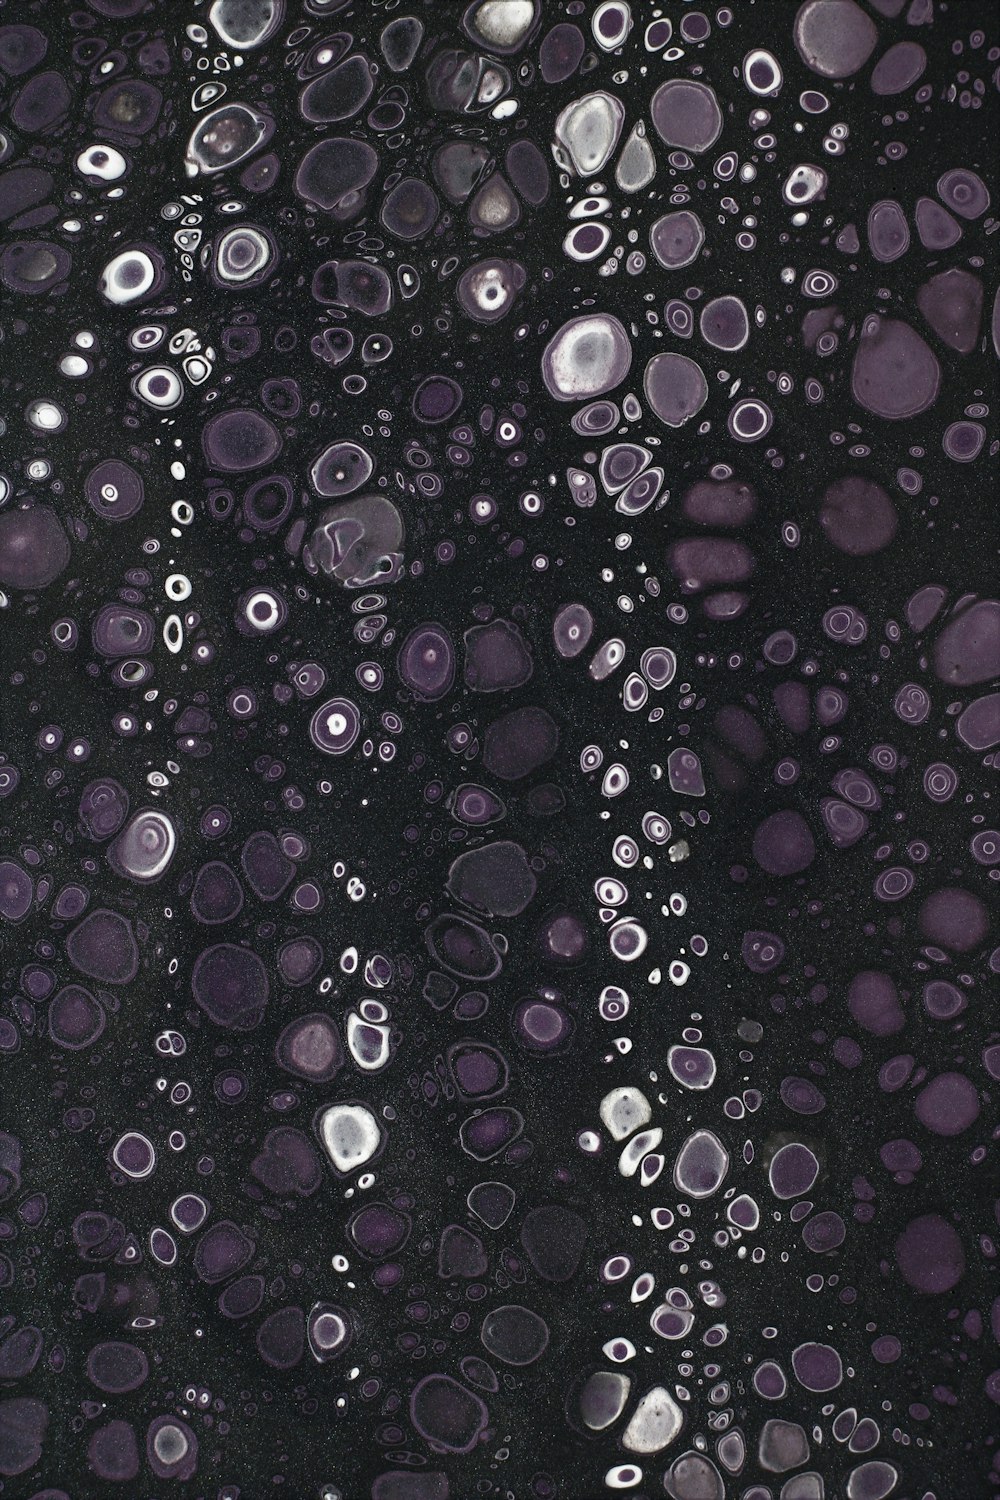 un primo piano di bolle d'acqua su una superficie nera